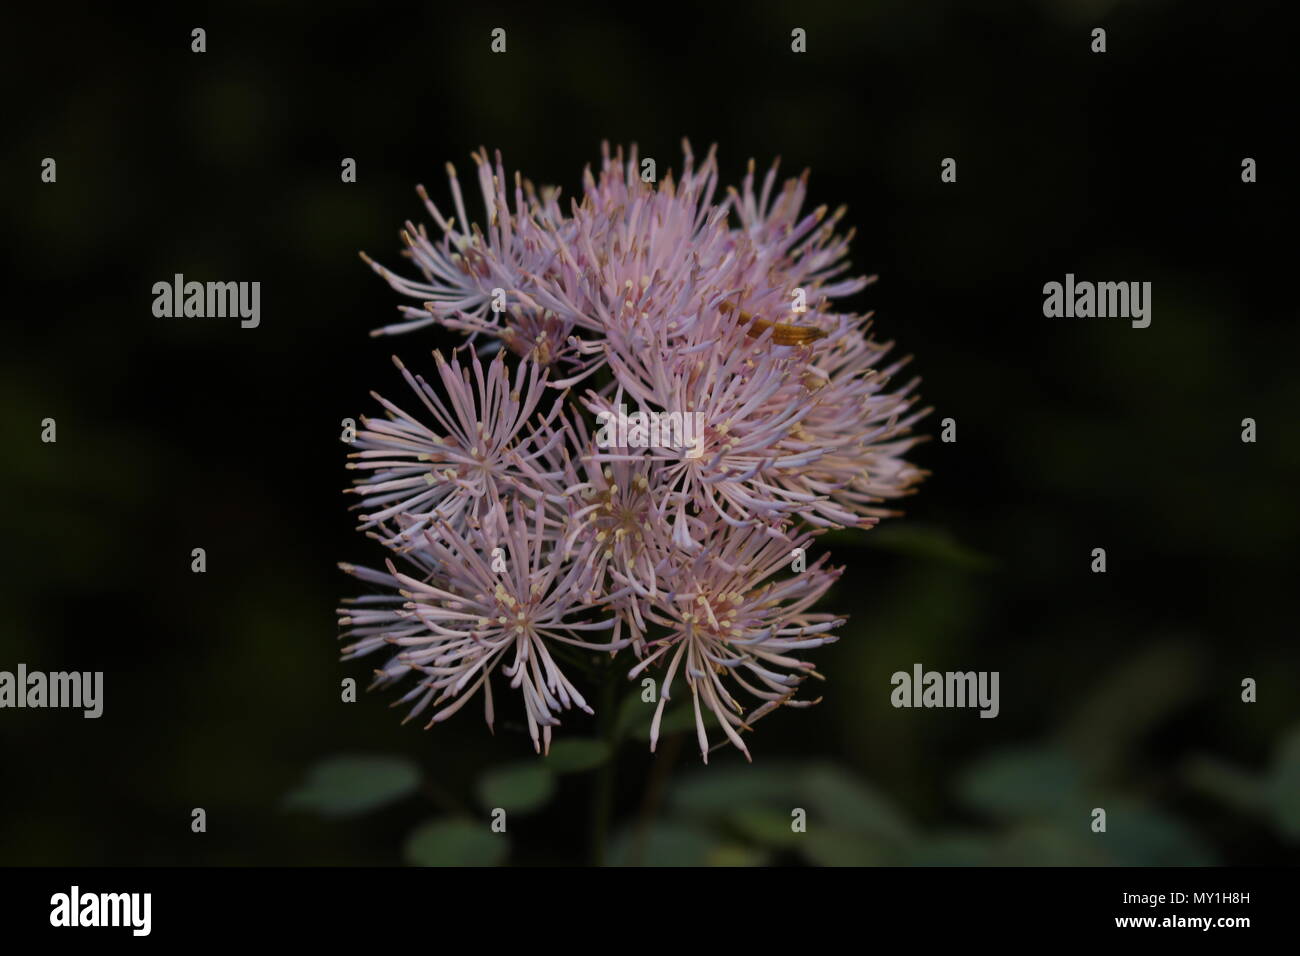 Close up flowers of Thalictrum aquilegifolium with dark background Stock Photo